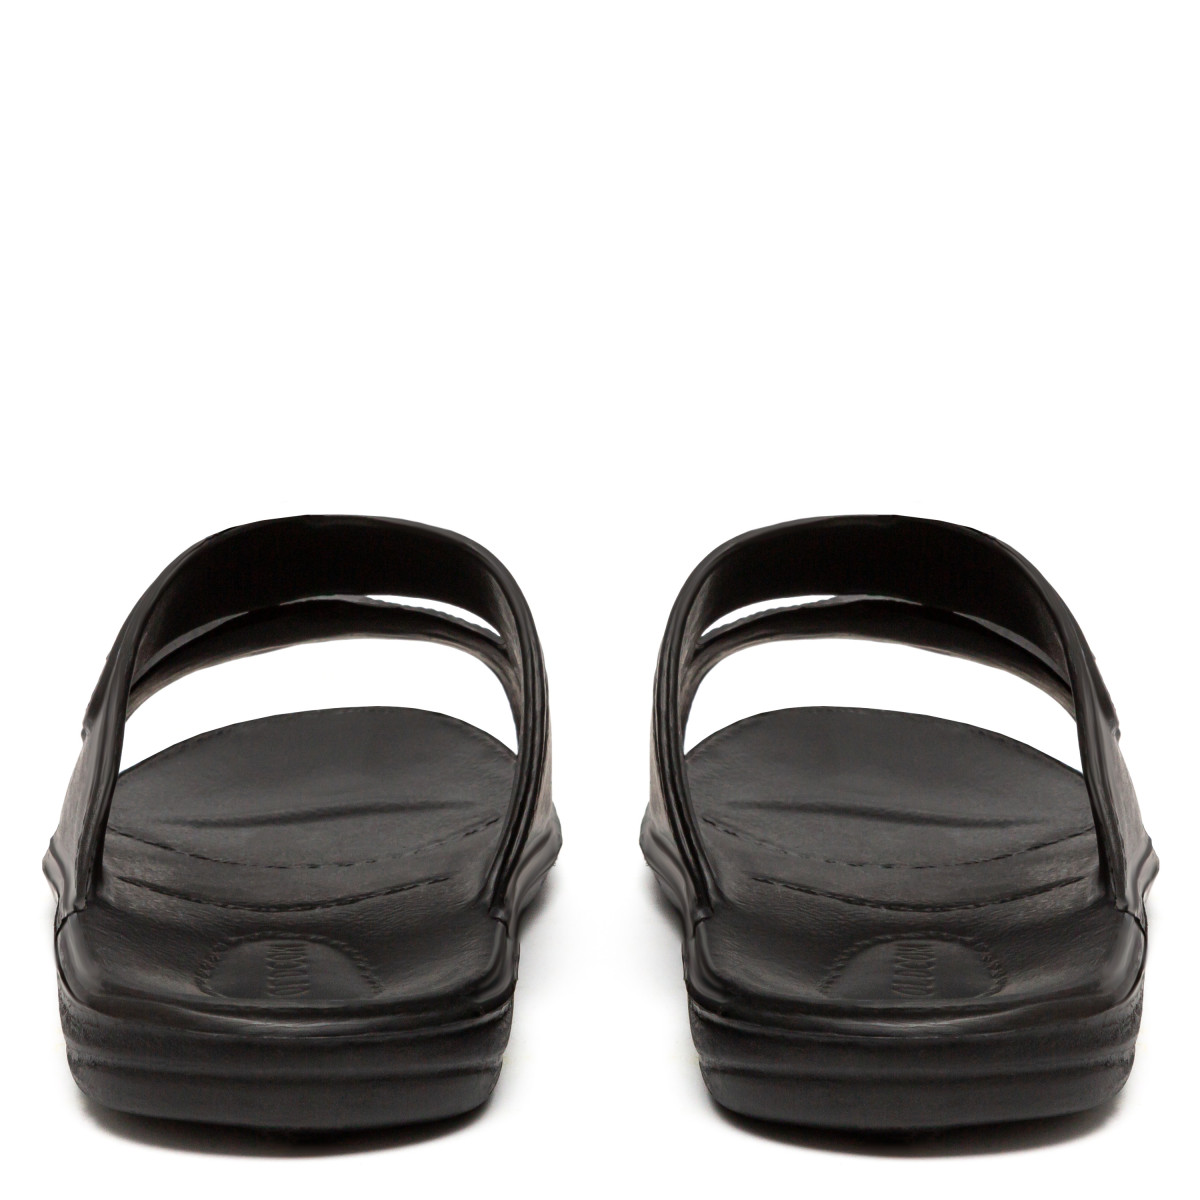 Buy online Men's Flip-Flops EVA 2, Black - OLDCOM